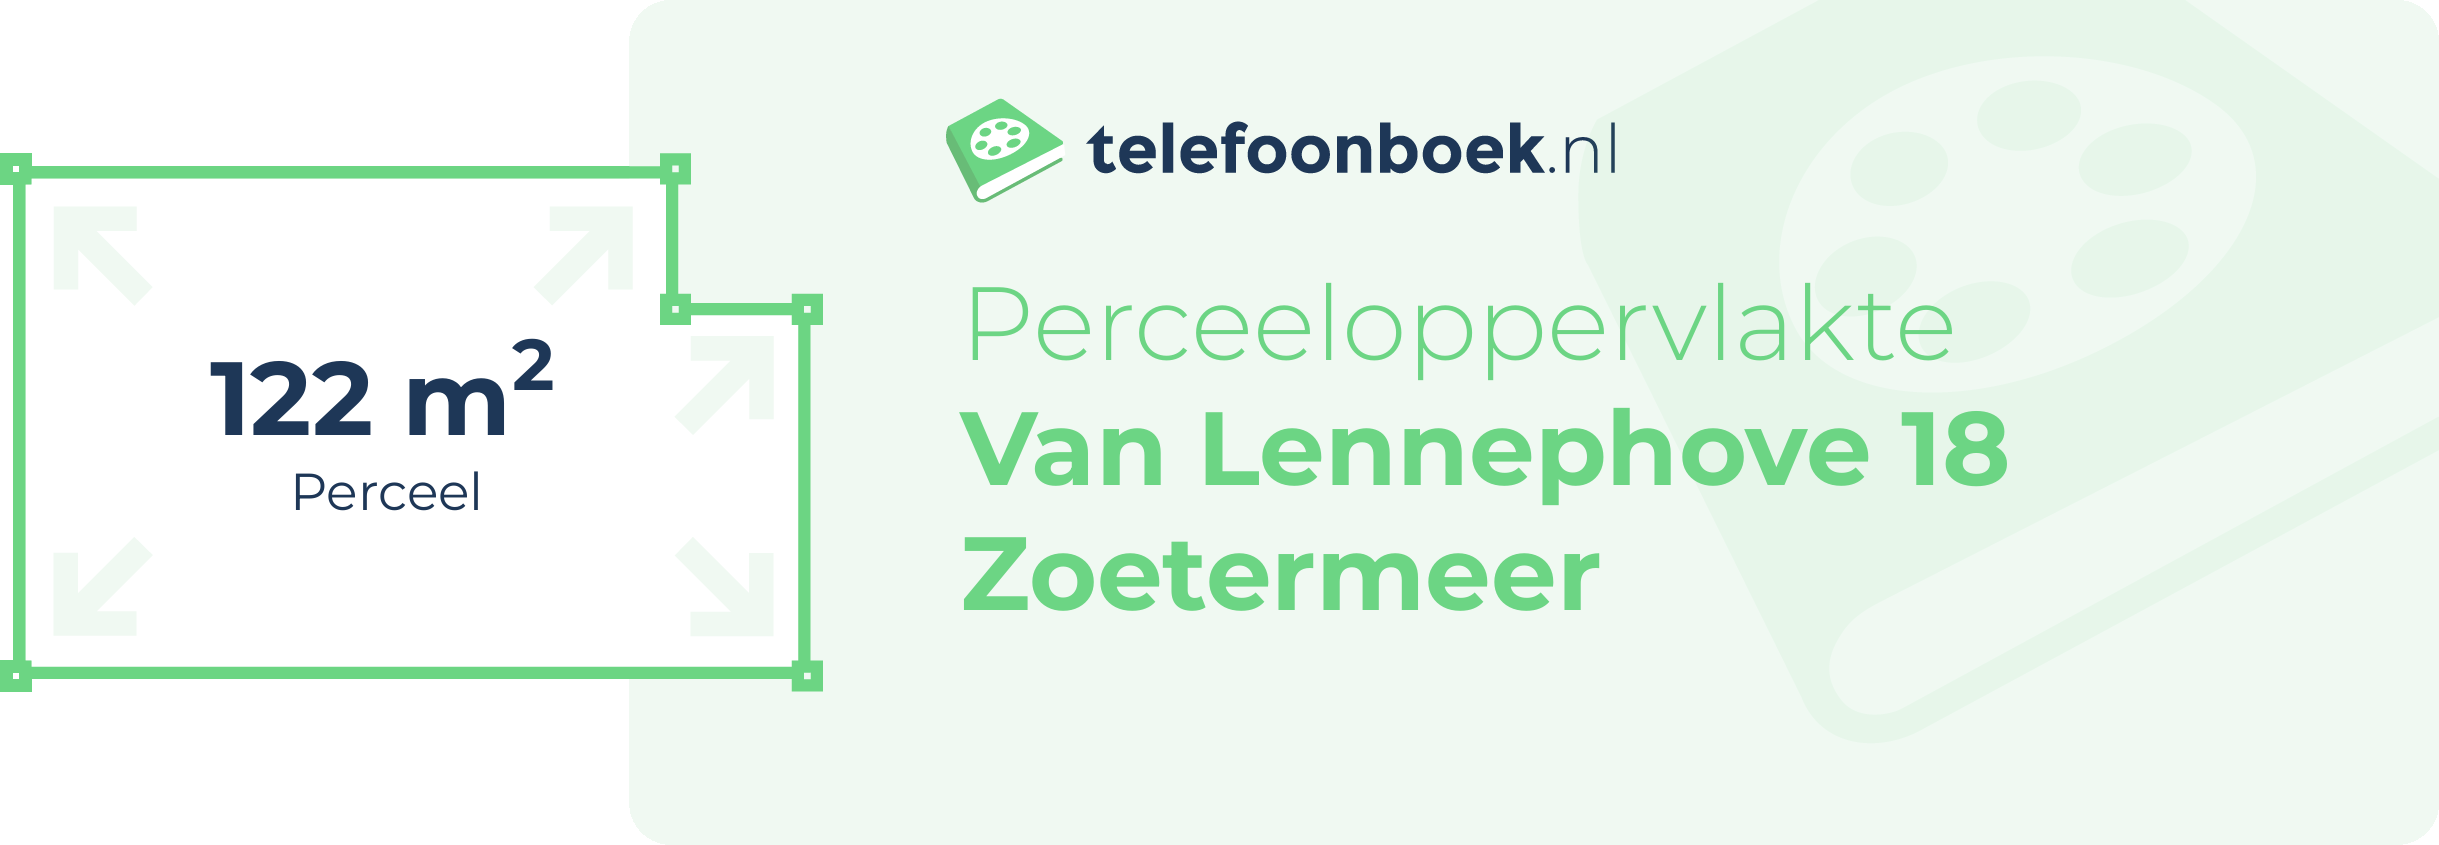 Perceeloppervlakte Van Lennephove 18 Zoetermeer